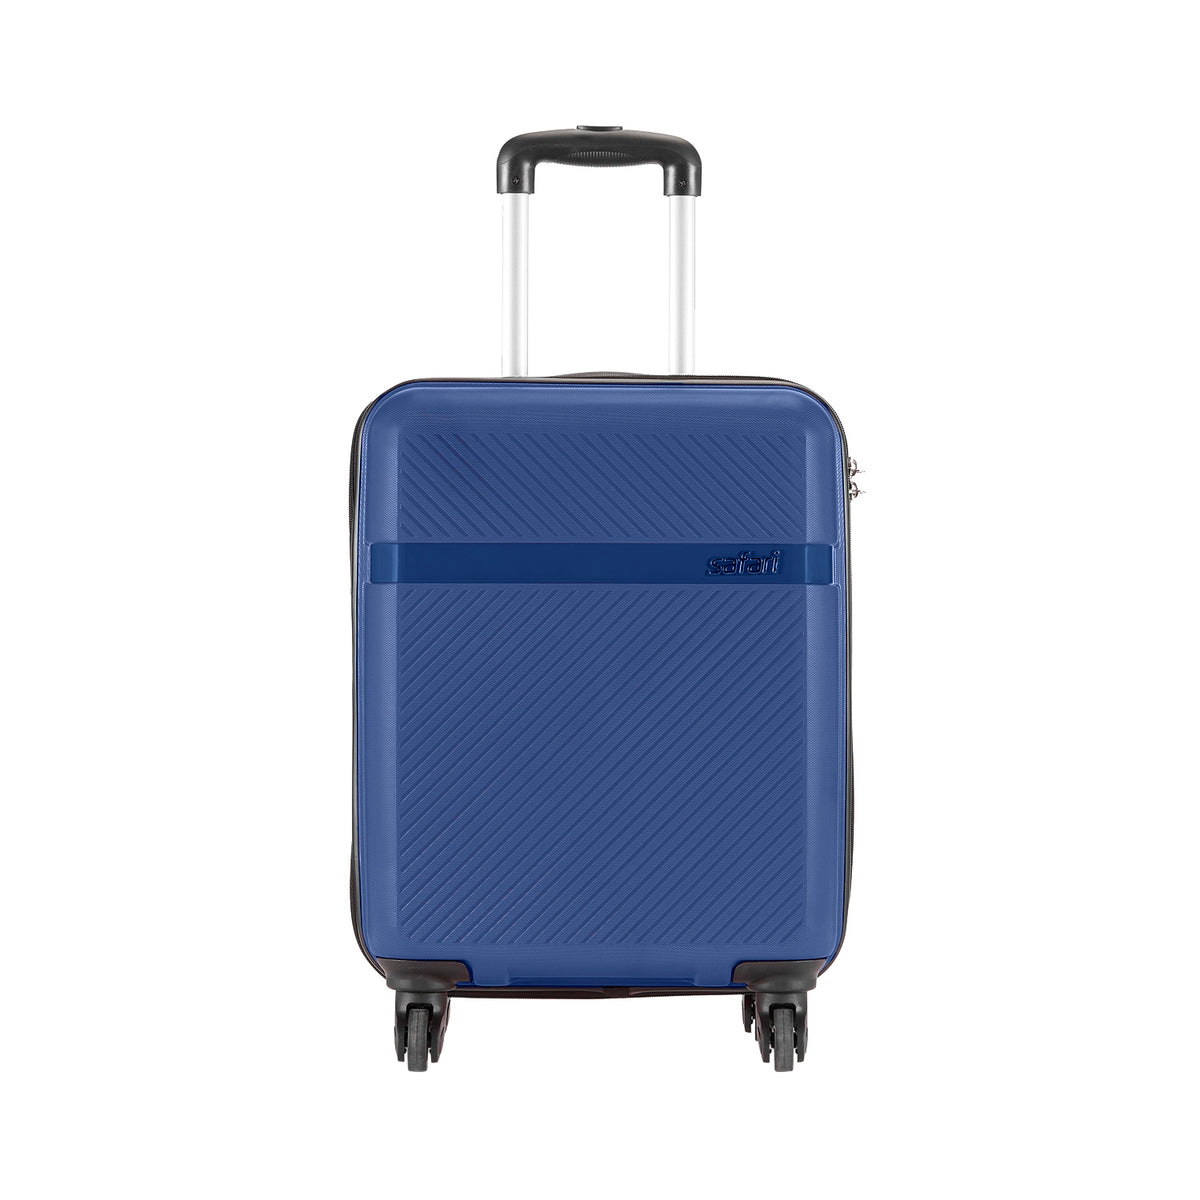 Safari Blaze Blue Trolley Bag with 360° Wheels